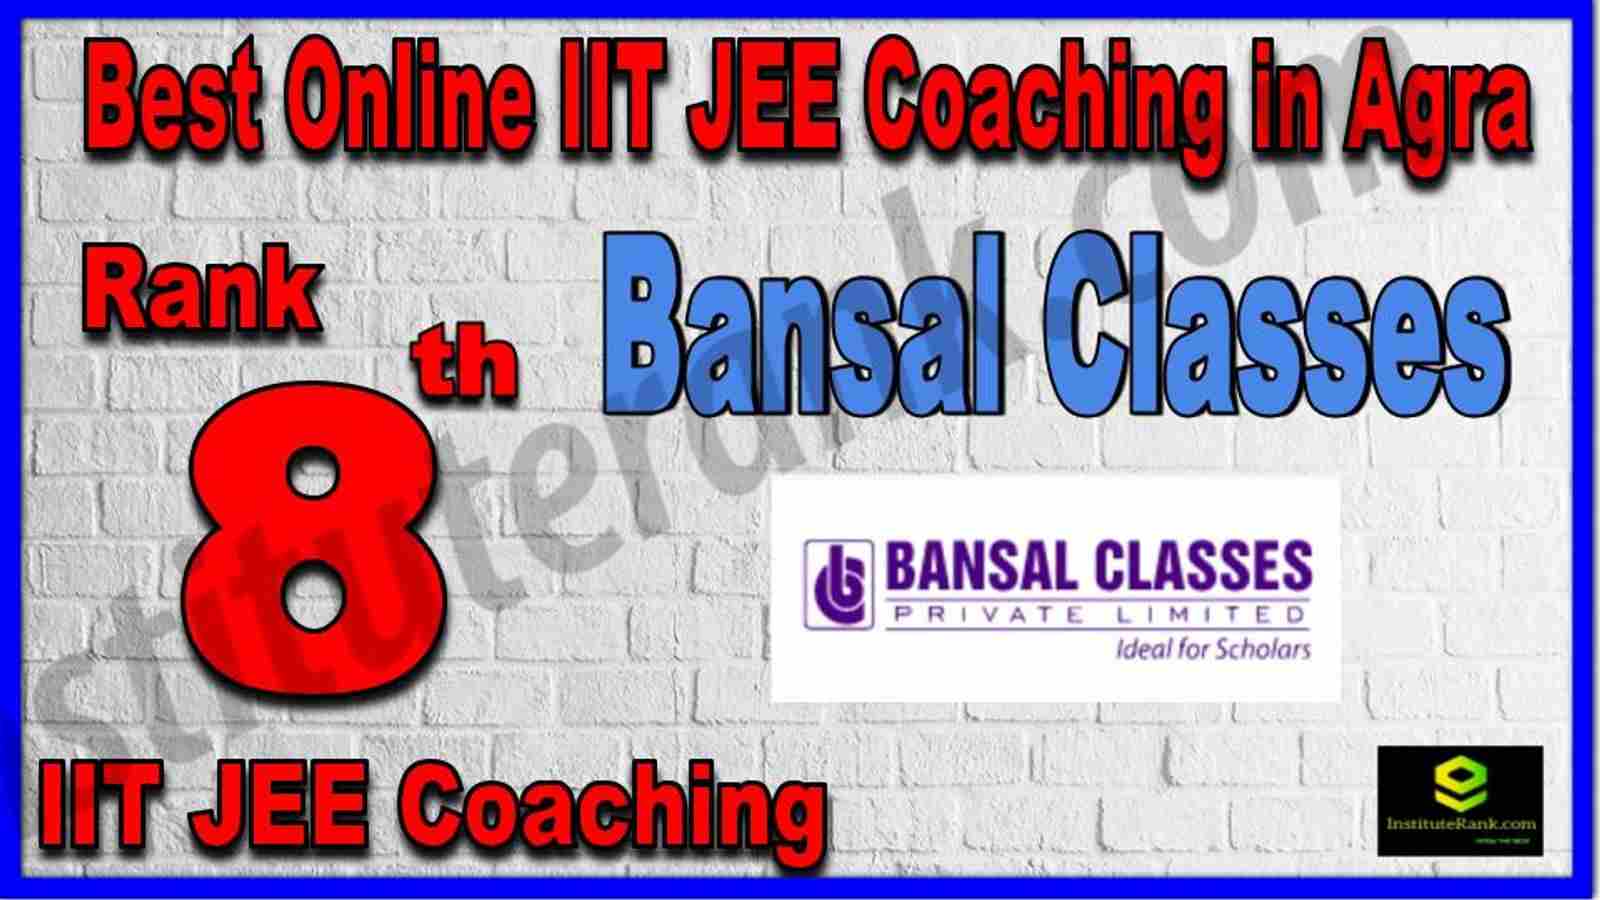 Rank 8th Best Online IIT JEE Coaching in Agra